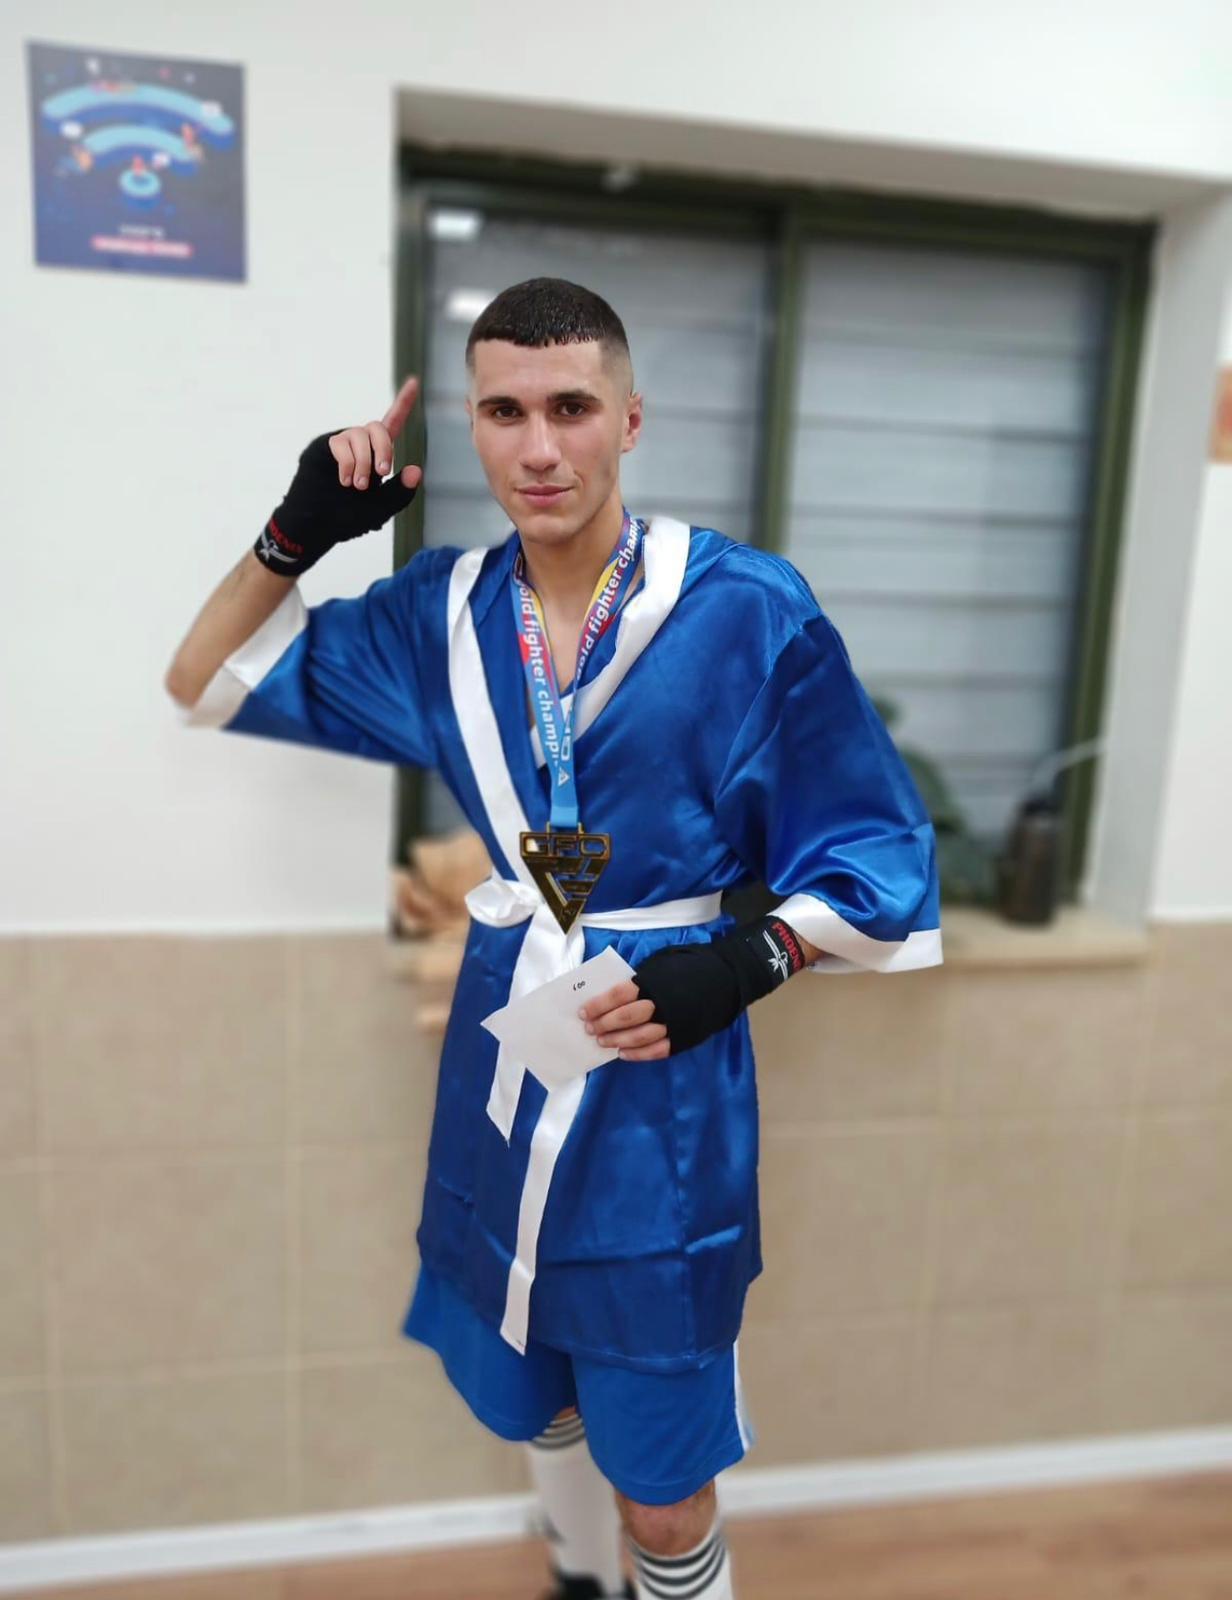 فوز الطالب يوسف بربور بالمرتبة الأولى محترفين في الملاكمة